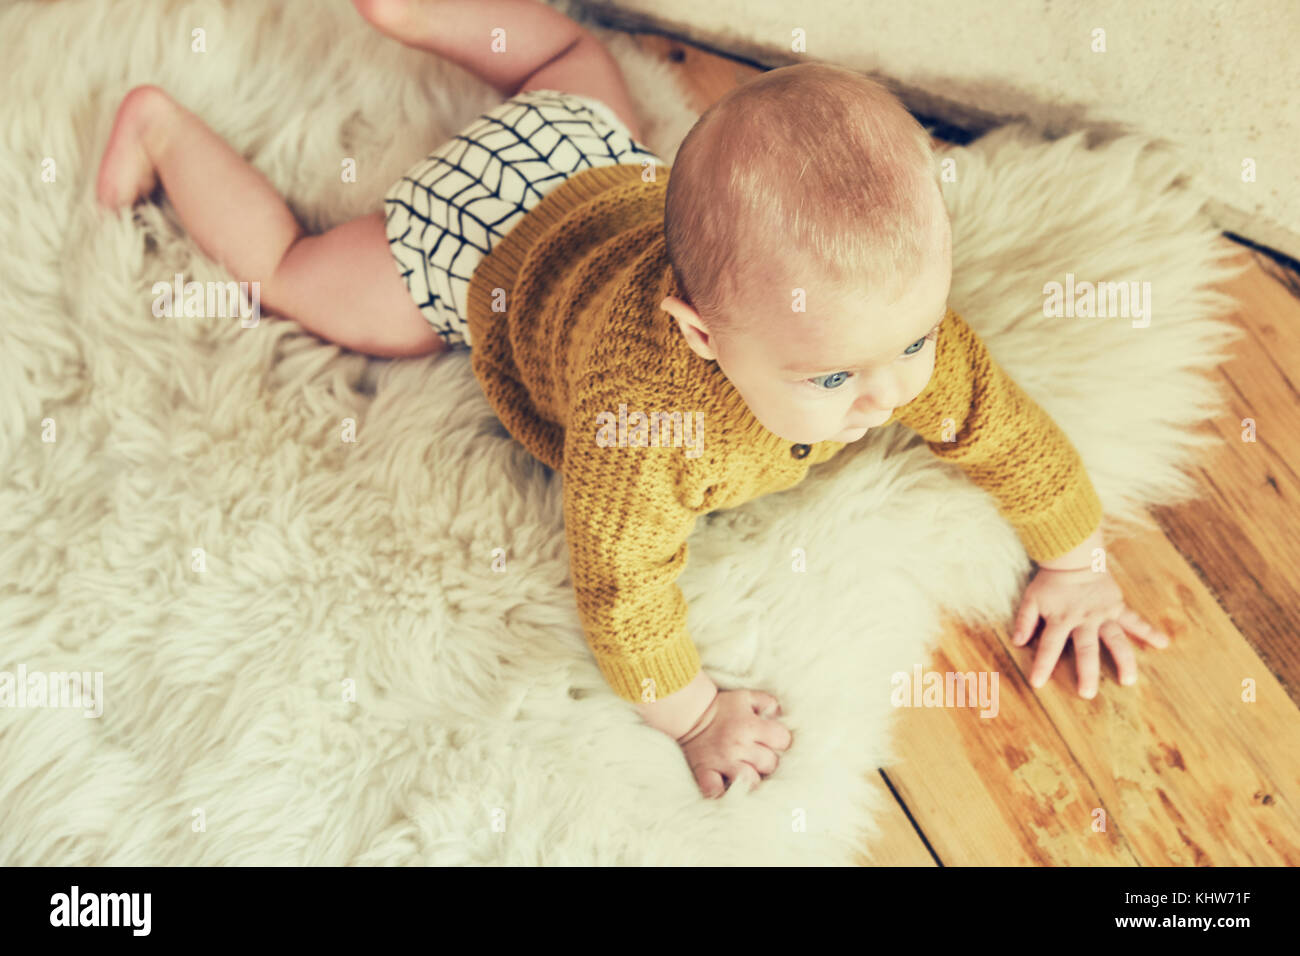 Overhead view of baby boy lying on sheepskin rug Stock Photo